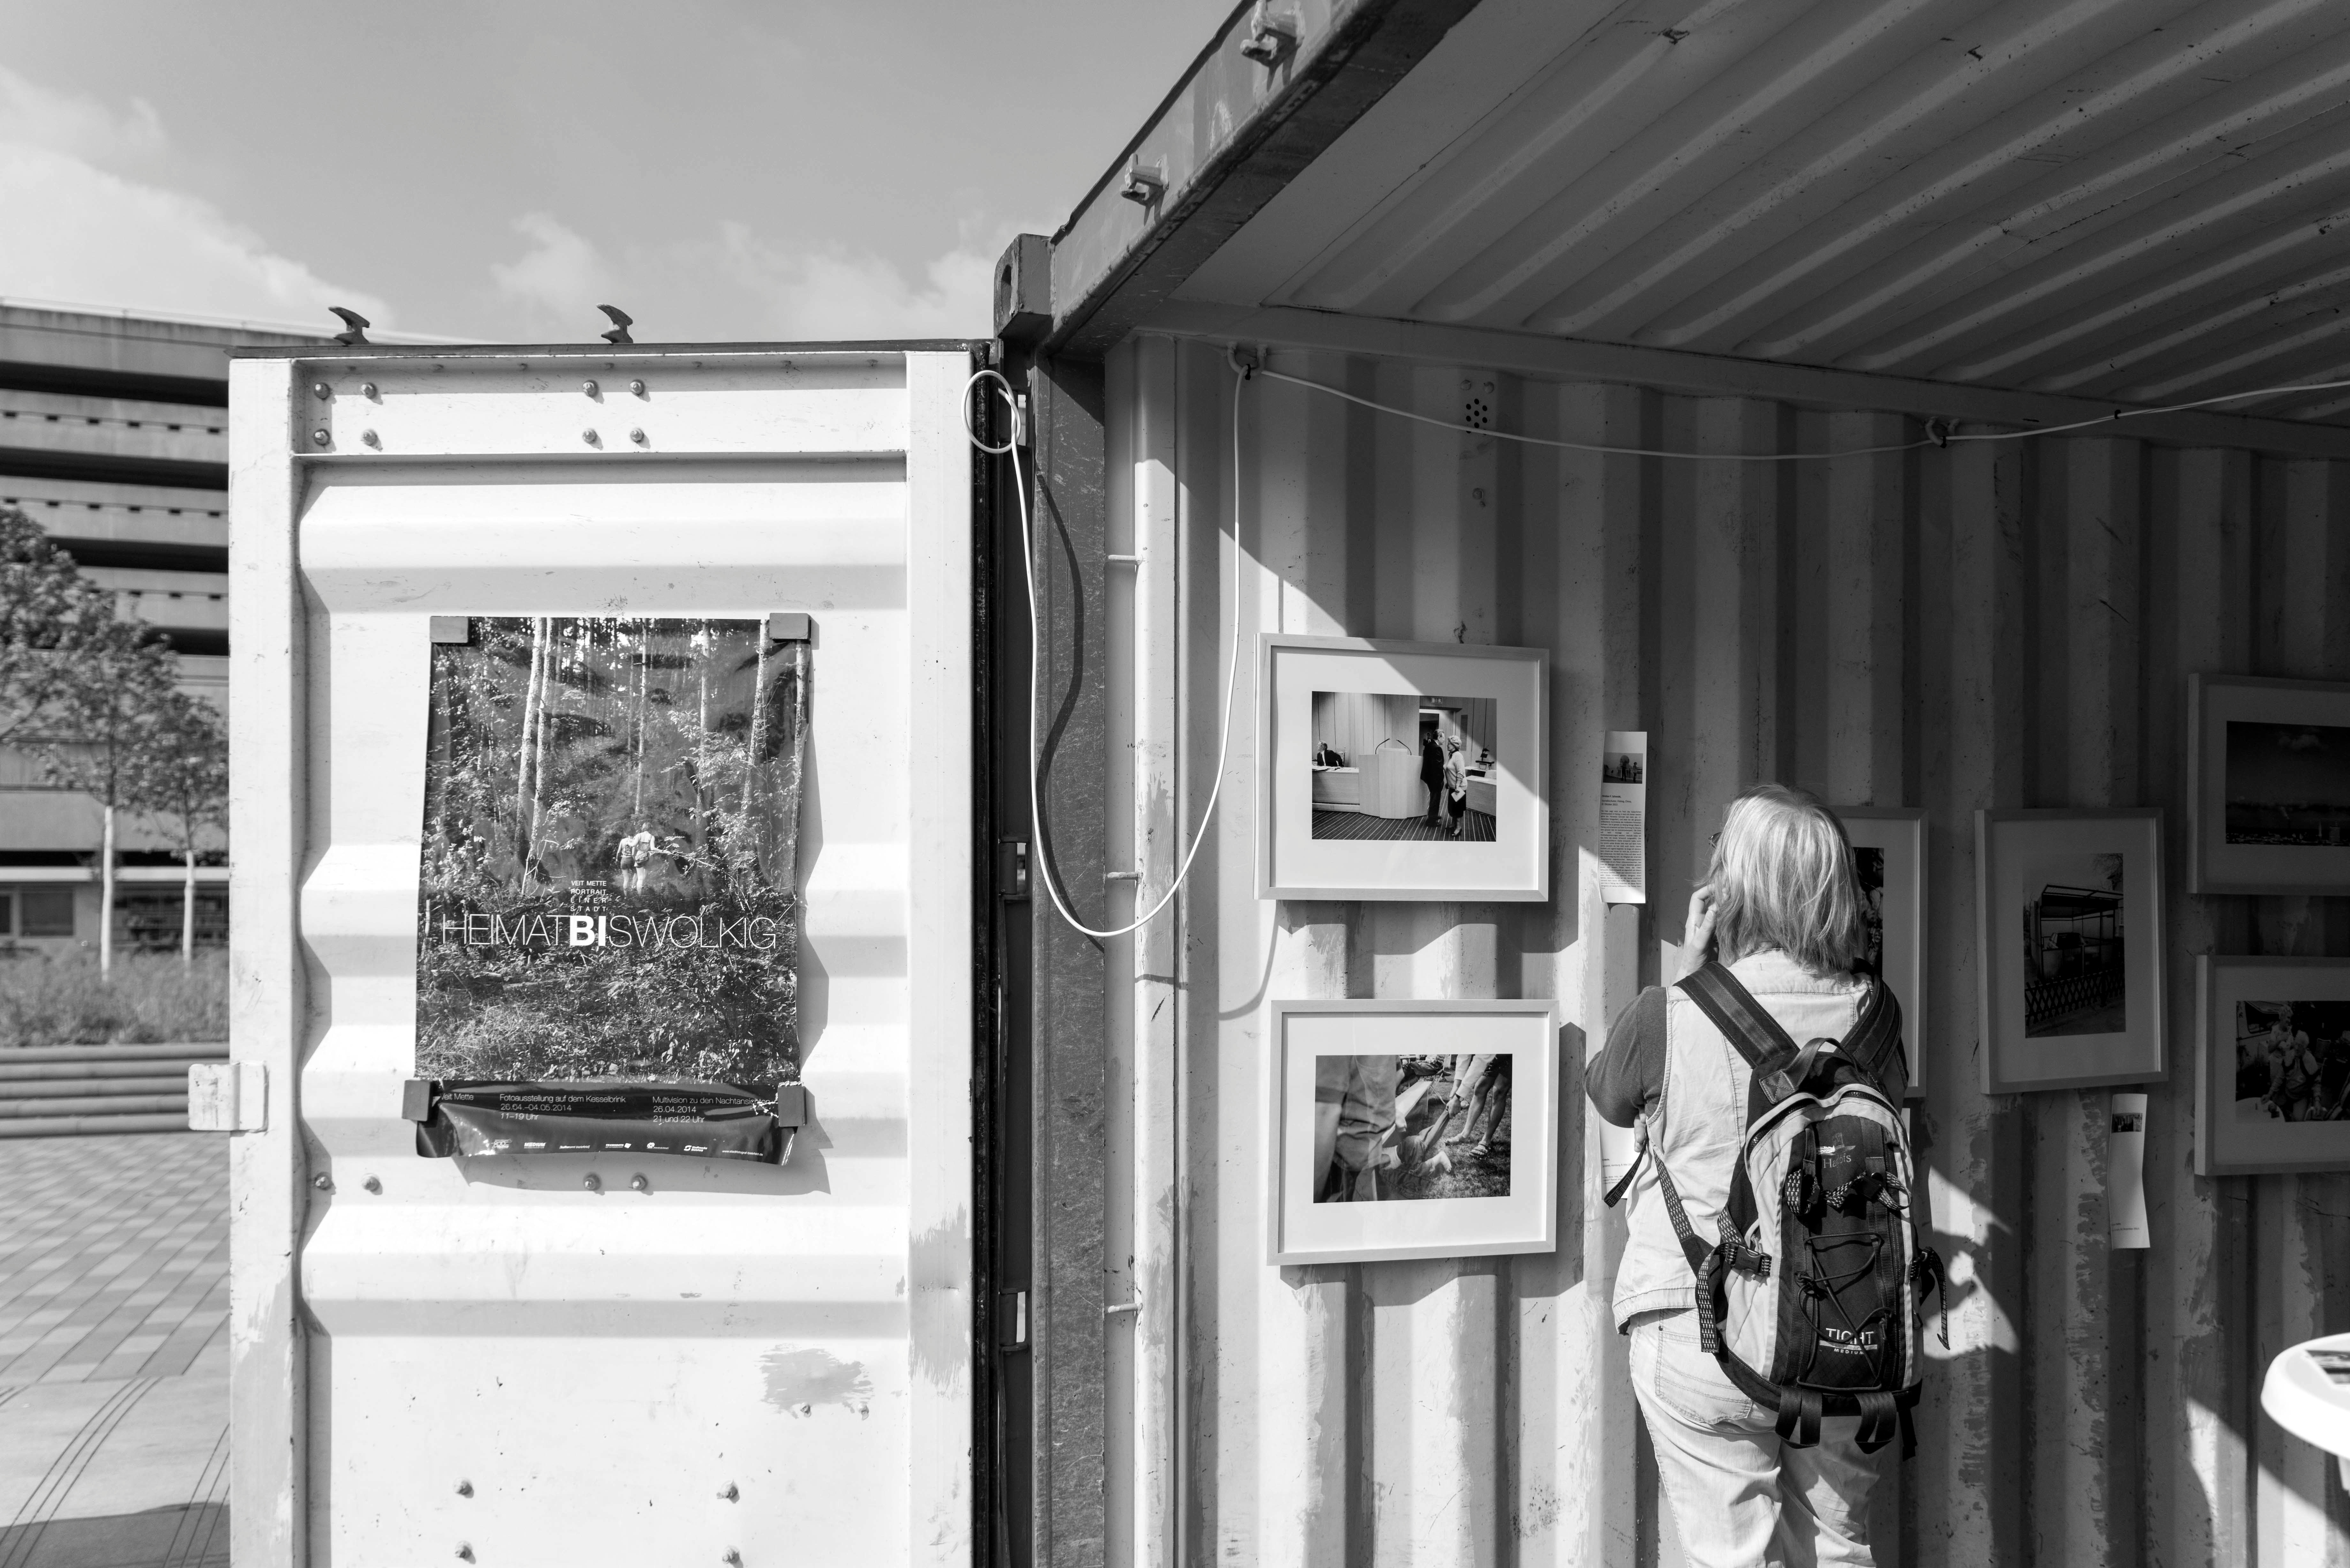 Fotoausstellung in Frachtcontainern